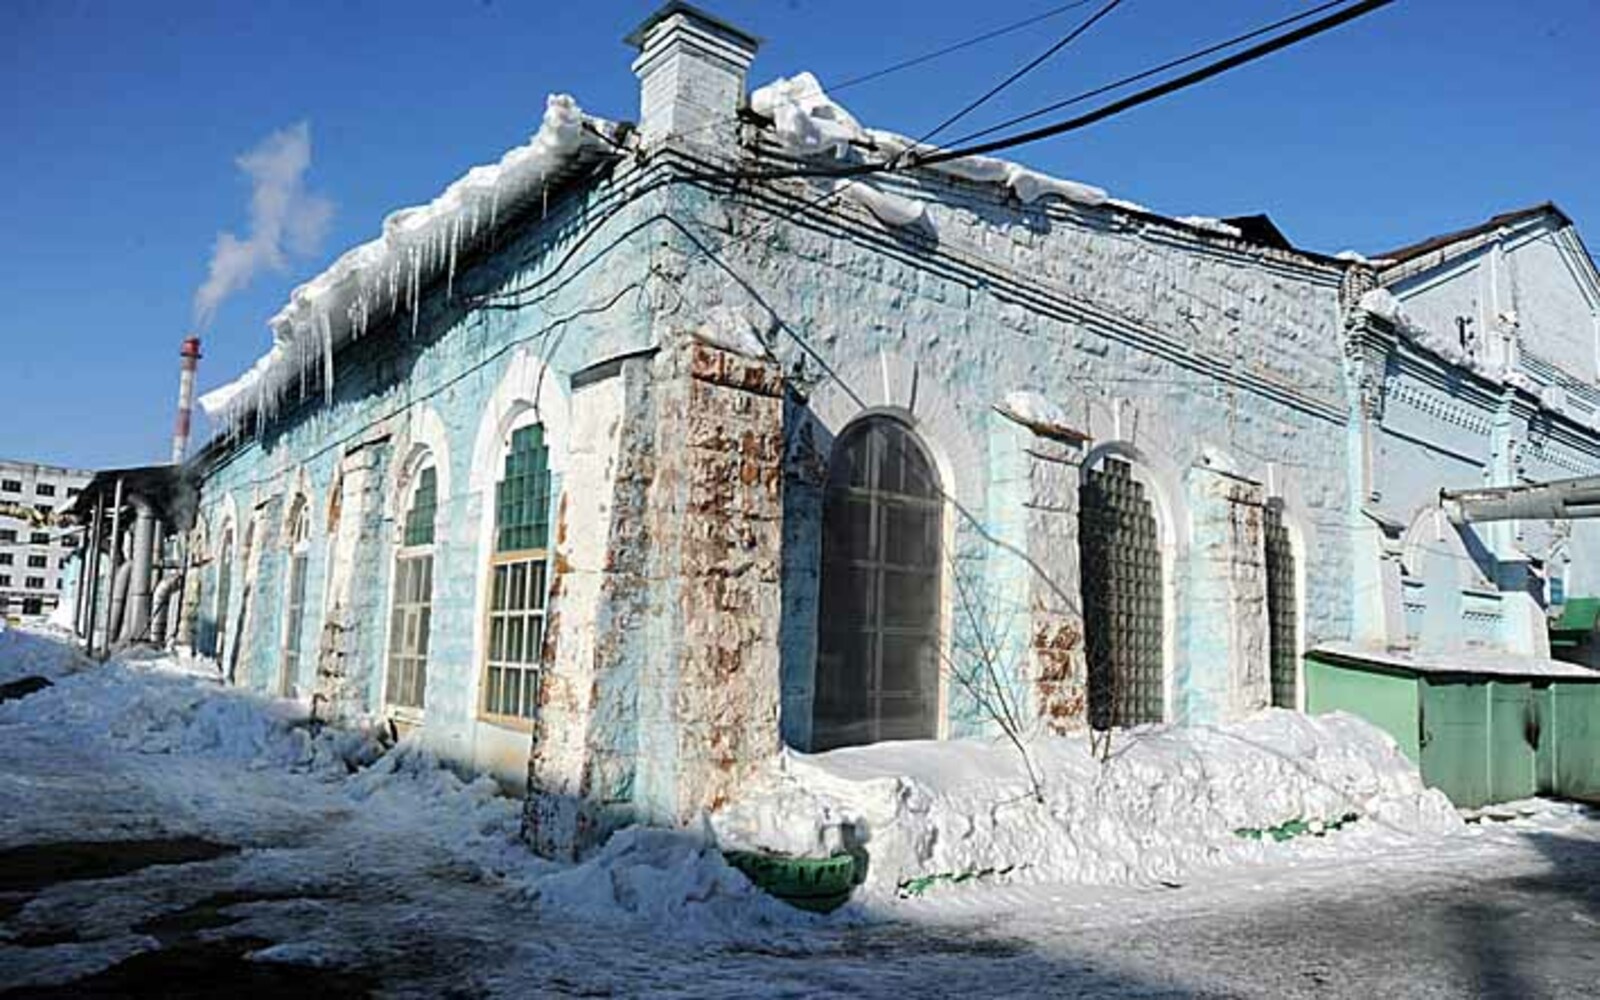 Уфимский тепловозоремонтный завод признан объектом культурного наследия.